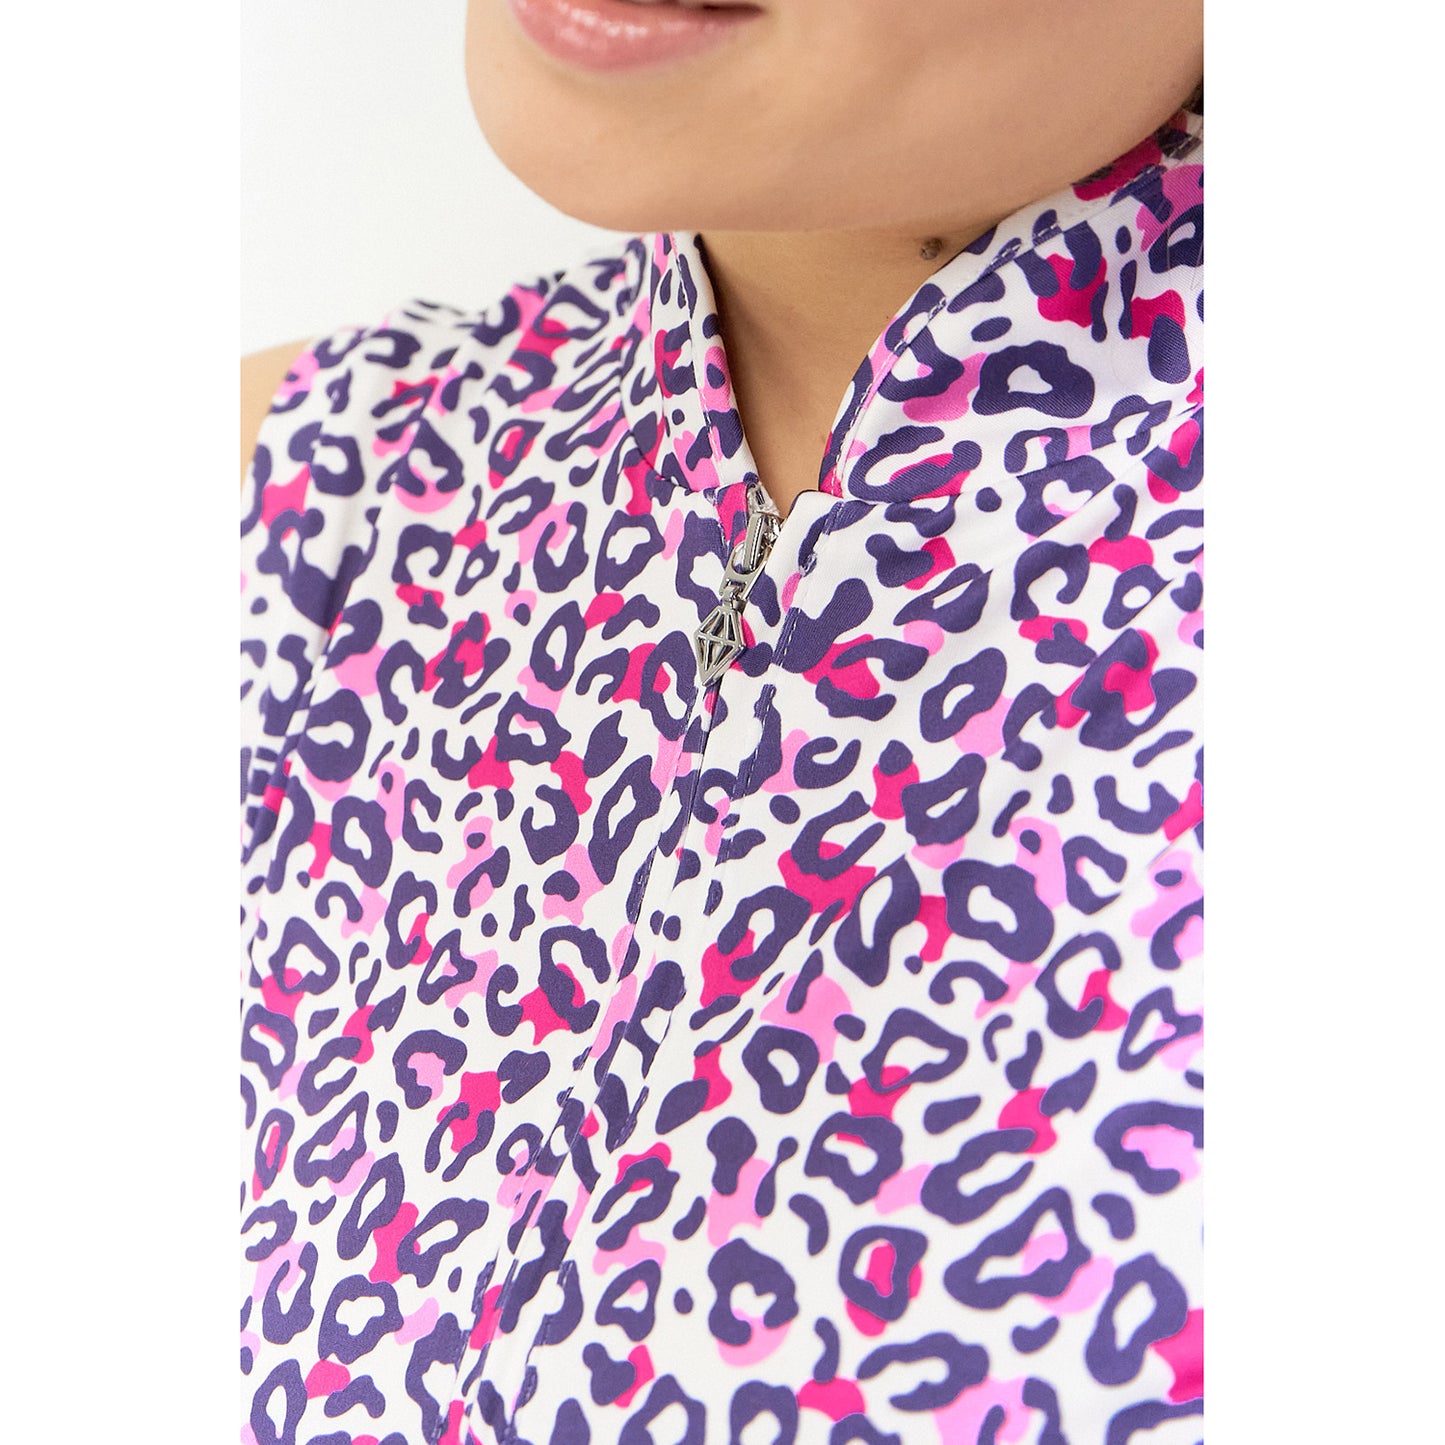 Pure Ladies Cheetah Print Cap Sleeve Polo Shirt